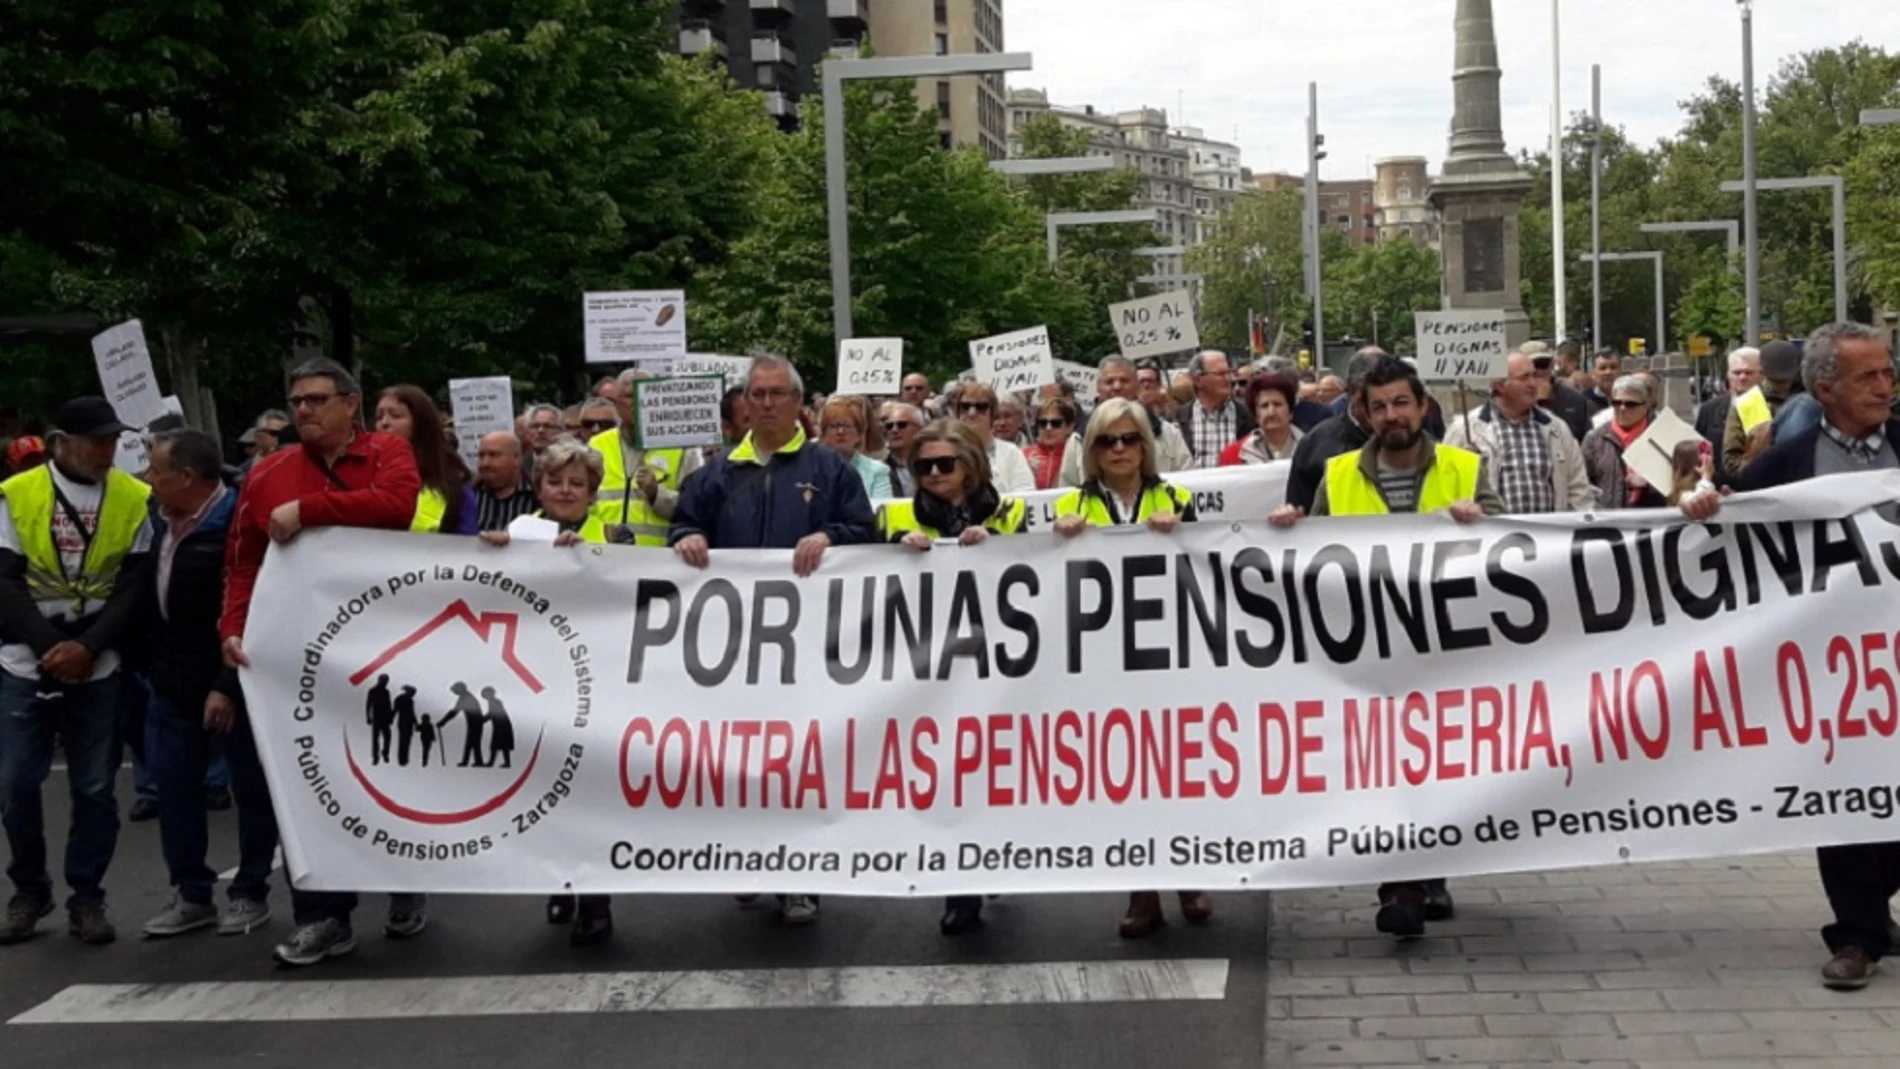 Manifestación por pensiones dignas en Zaragoza